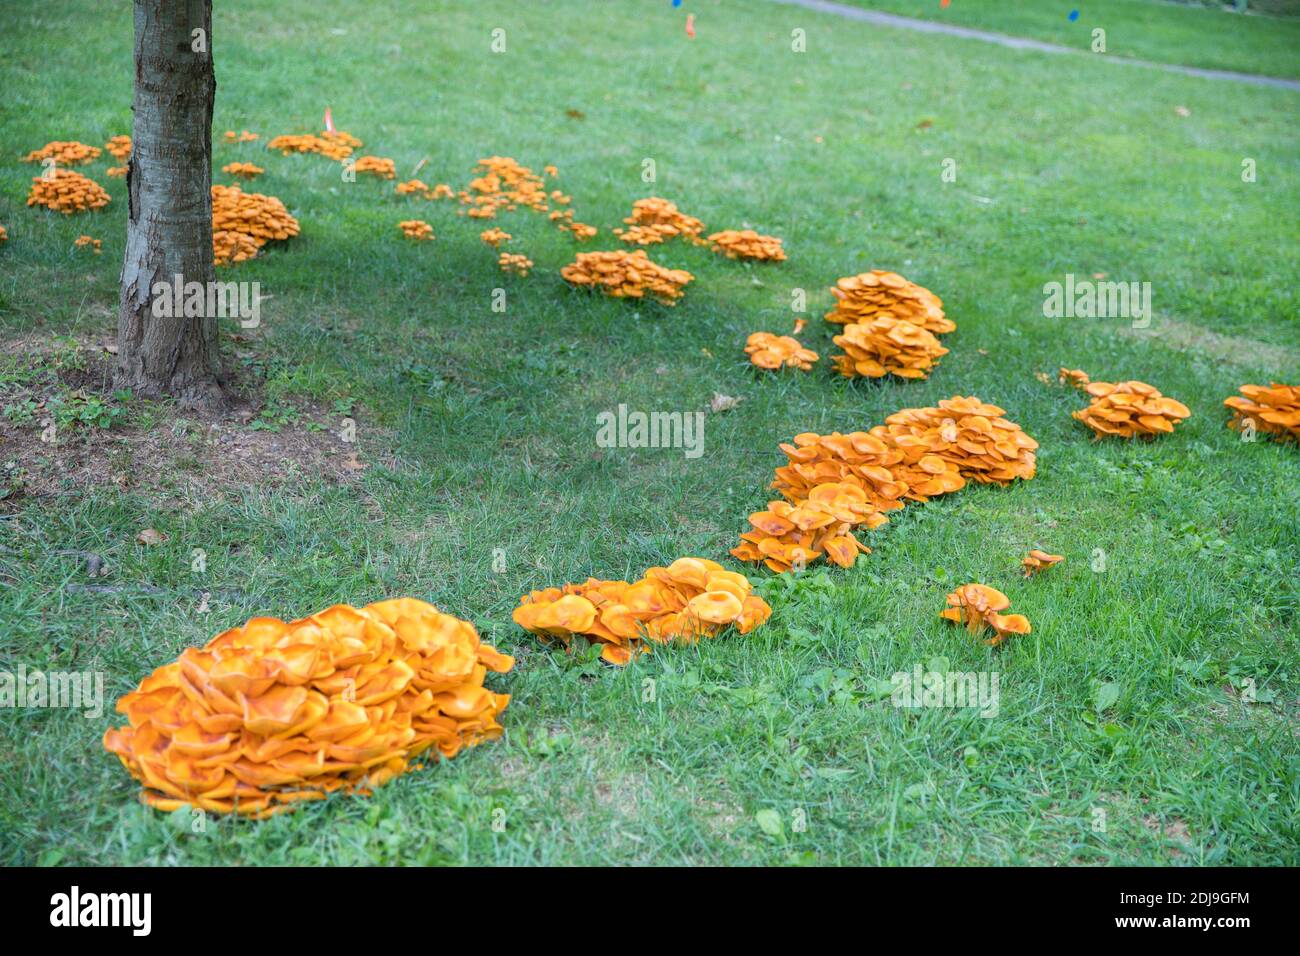 Omphalotus olearius.champignon toxique orange vif, champignon. Bioluminescent. Beaux champignons - image Banque D'Images